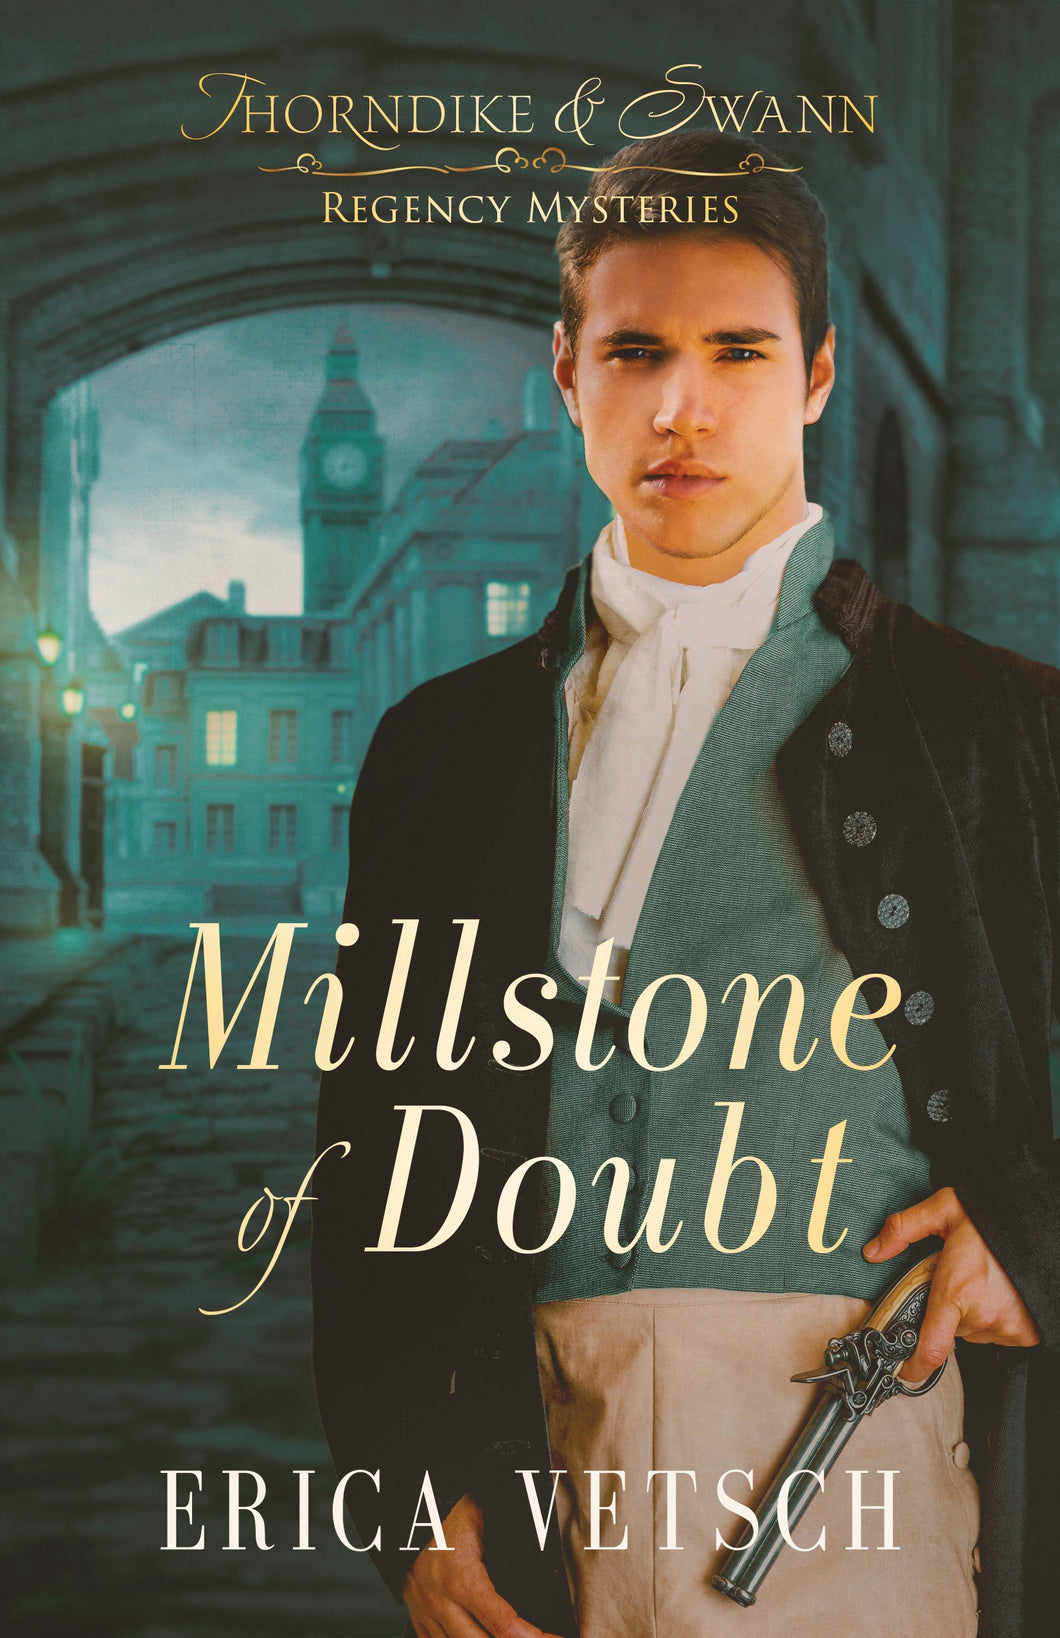 Millstone Of Doubt (Thornkike & Swann Regency Mysteries #2)